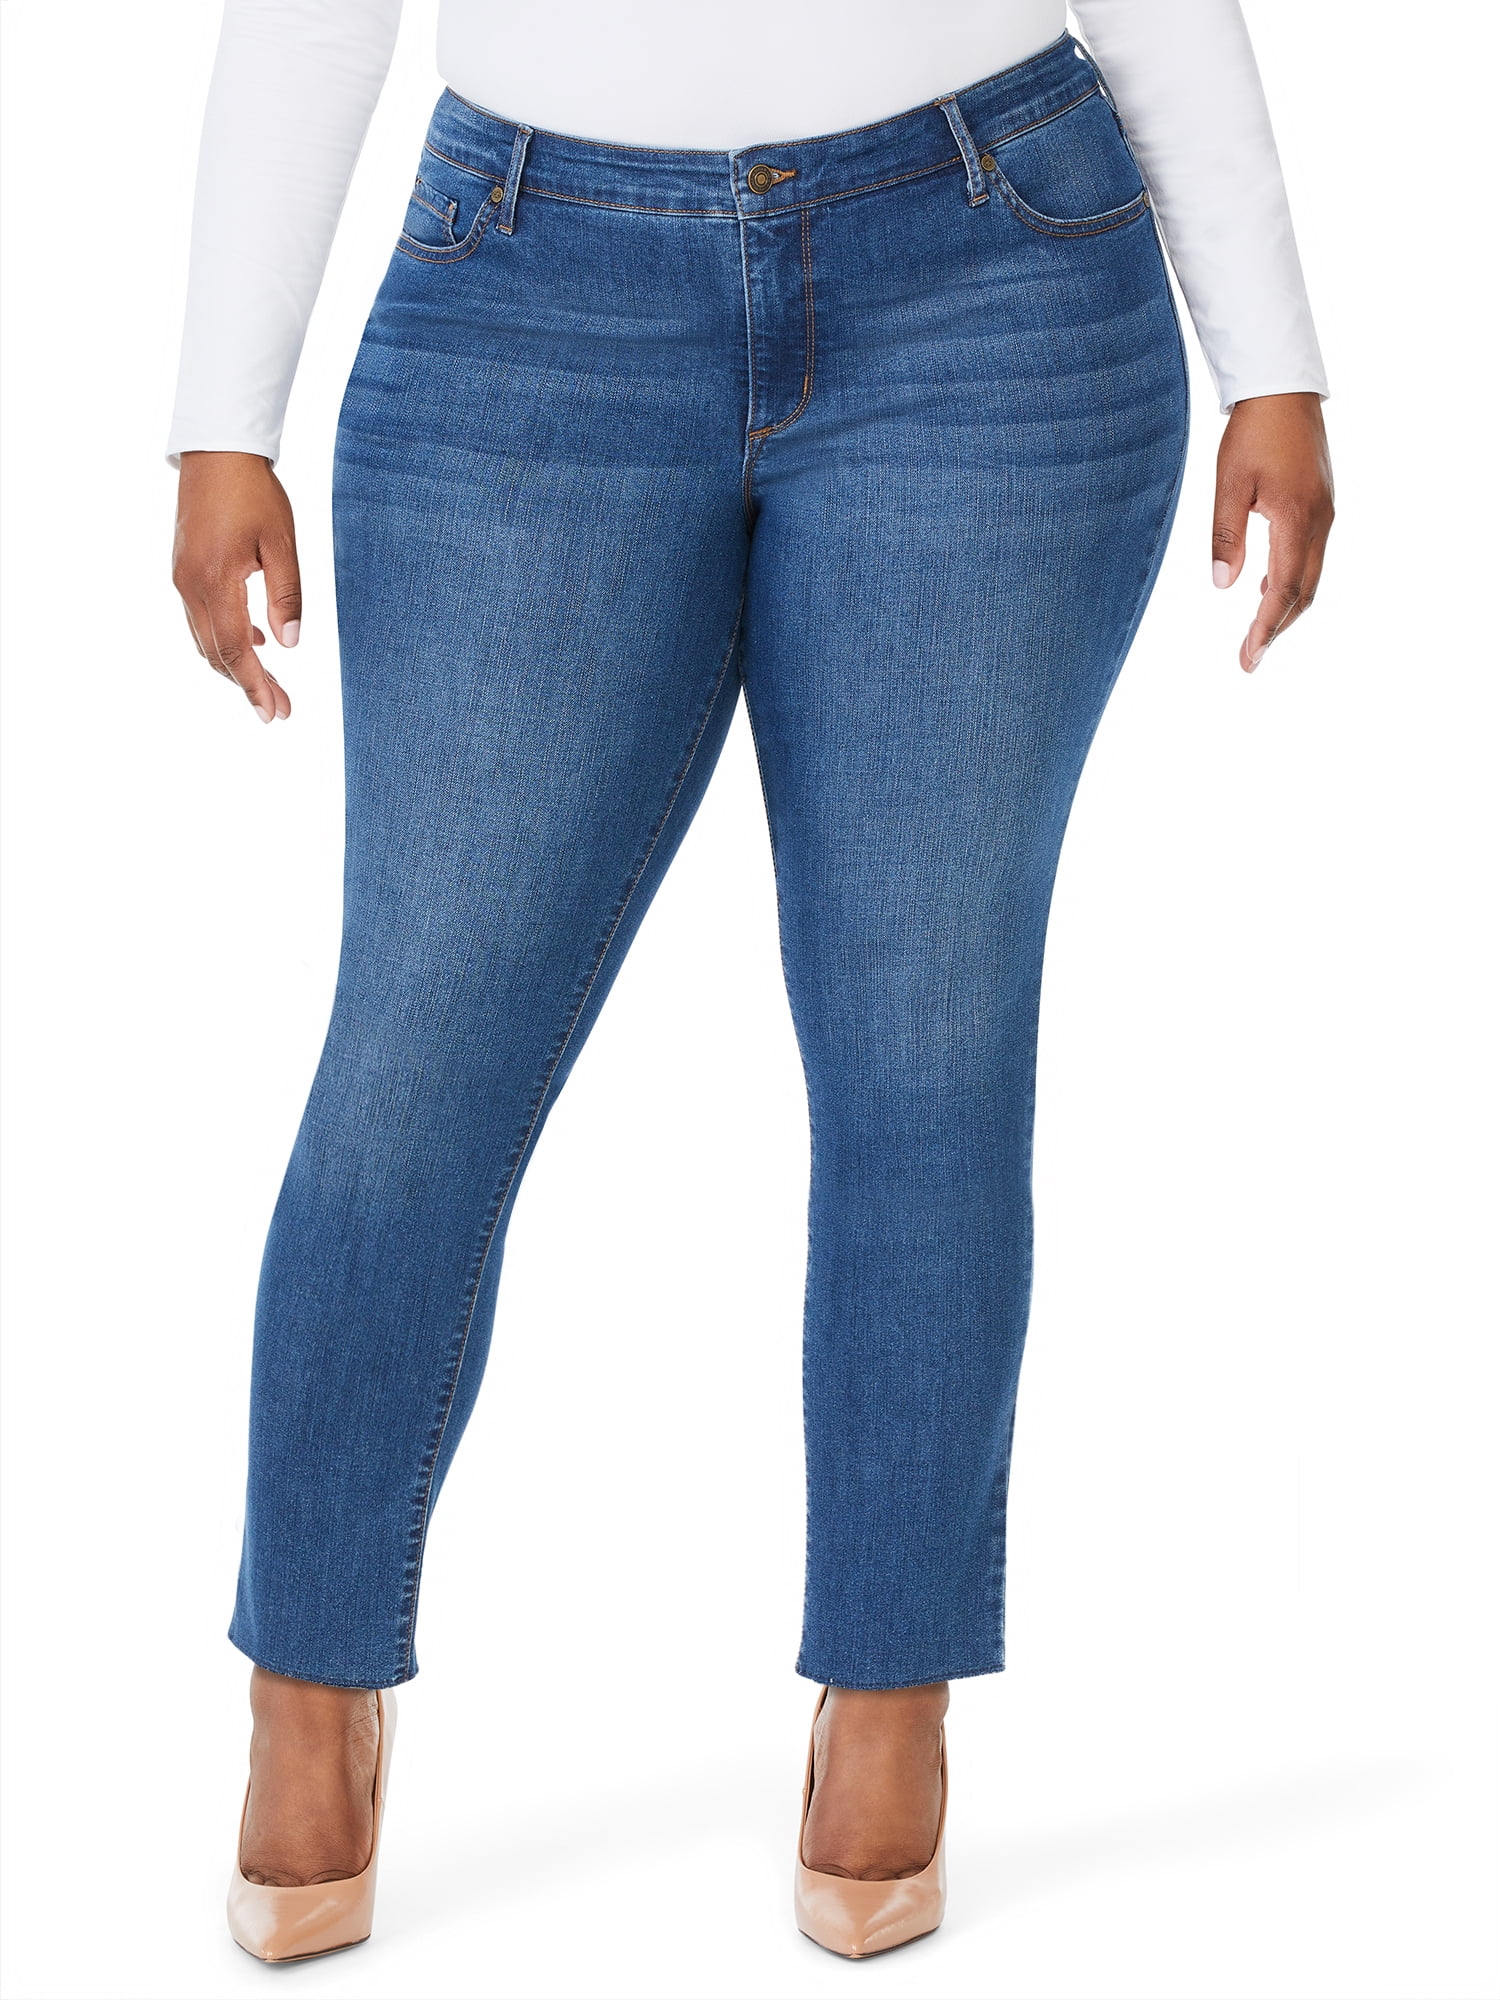 Sofia Jeans Women's Plus Size Curvy Skinny Stretch Ankle Jeans - Walmart.com